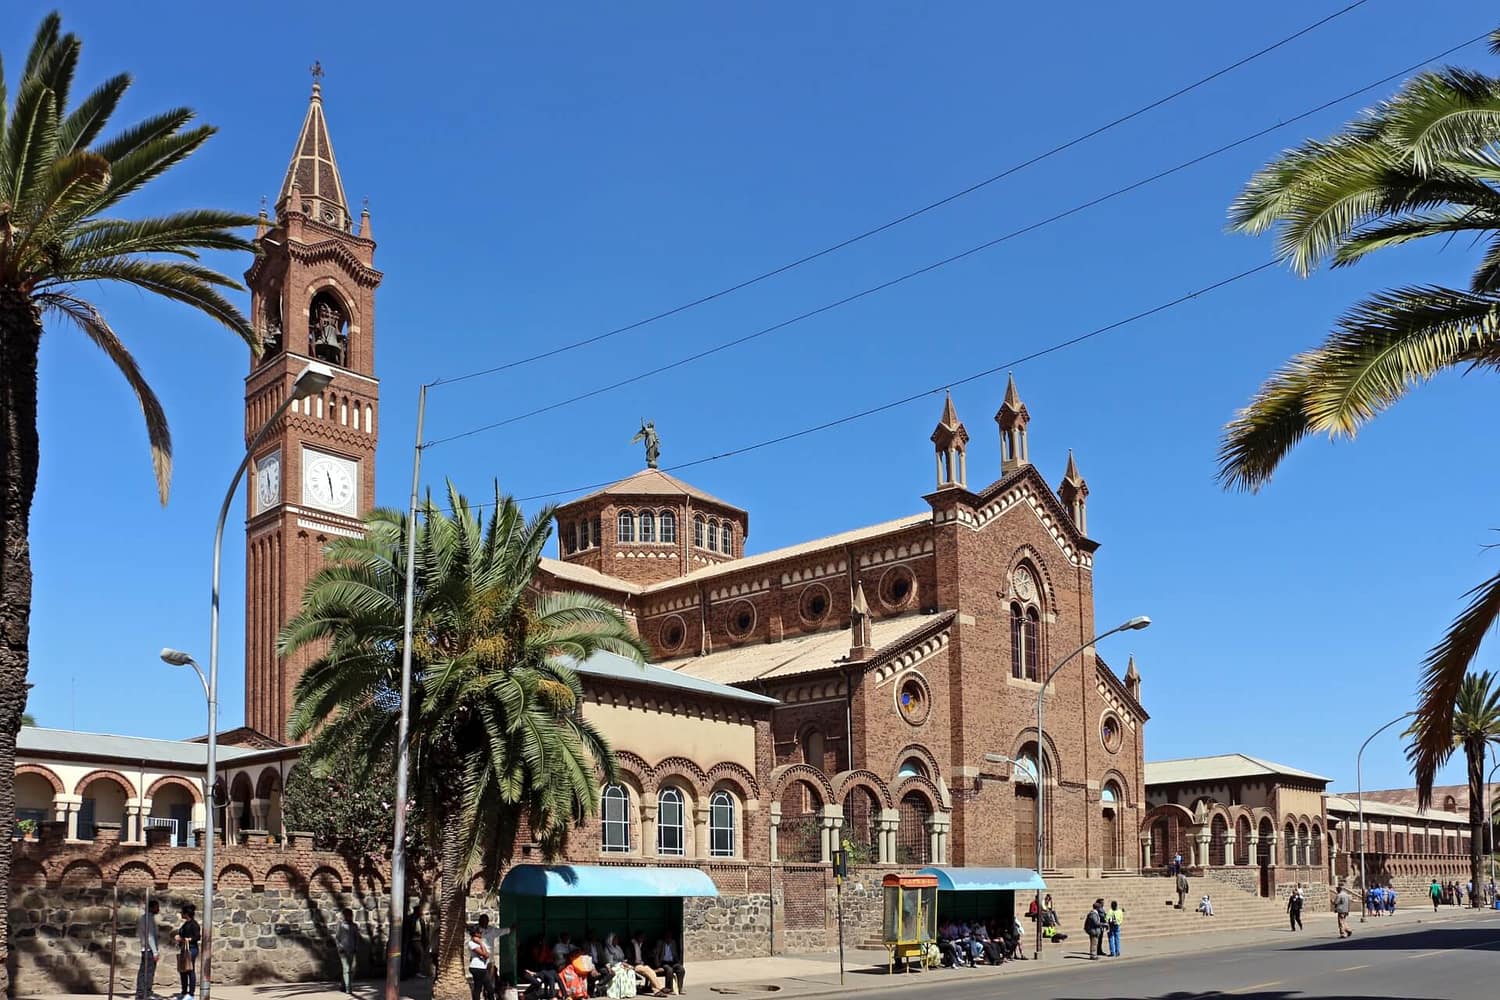 Touren Asmara, Besichtigung von Asmara, römisch-katholische Kirche von Asmara